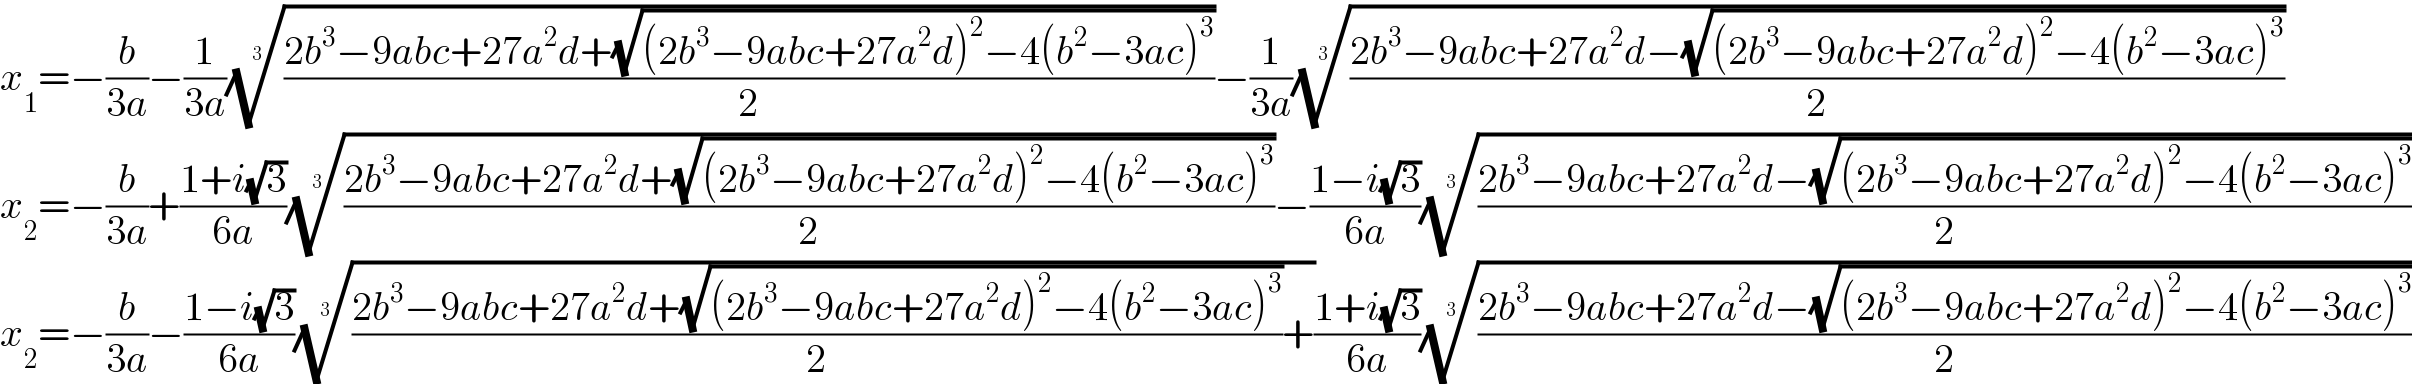 x_1 =−(b/(3a))−(1/(3a))(((2b^3 −9abc+27a^2 d+(√((2b^3 −9abc+27a^2 d)^2 −4(b^2 −3ac)^3 )))/2))^(1/3) −(1/(3a))(((2b^3 −9abc+27a^2 d−(√((2b^3 −9abc+27a^2 d)^2 −4(b^2 −3ac)^3 )))/2))^(1/3)   x_2 =−(b/(3a))+((1+i(√3))/(6a))(((2b^3 −9abc+27a^2 d+(√((2b^3 −9abc+27a^2 d)^2 −4(b^2 −3ac)^3 )))/2))^(1/3) −((1−i(√3))/(6a))(((2b^3 −9abc+27a^2 d−(√((2b^3 −9abc+27a^2 d)^2 −4(b^2 −3ac)^3 )))/2))^(1/3)   x_2 =−(b/(3a))−((1−i(√3))/(6a))((((2b^3 −9abc+27a^2 d+(√((2b^3 −9abc+27a^2 d)^2 −4(b^2 −3ac)^3 )))/2)+))^(1/3) ((1+i(√3))/(6a))(((2b^3 −9abc+27a^2 d−(√((2b^3 −9abc+27a^2 d)^2 −4(b^2 −3ac)^3 )))/2))^(1/3)   